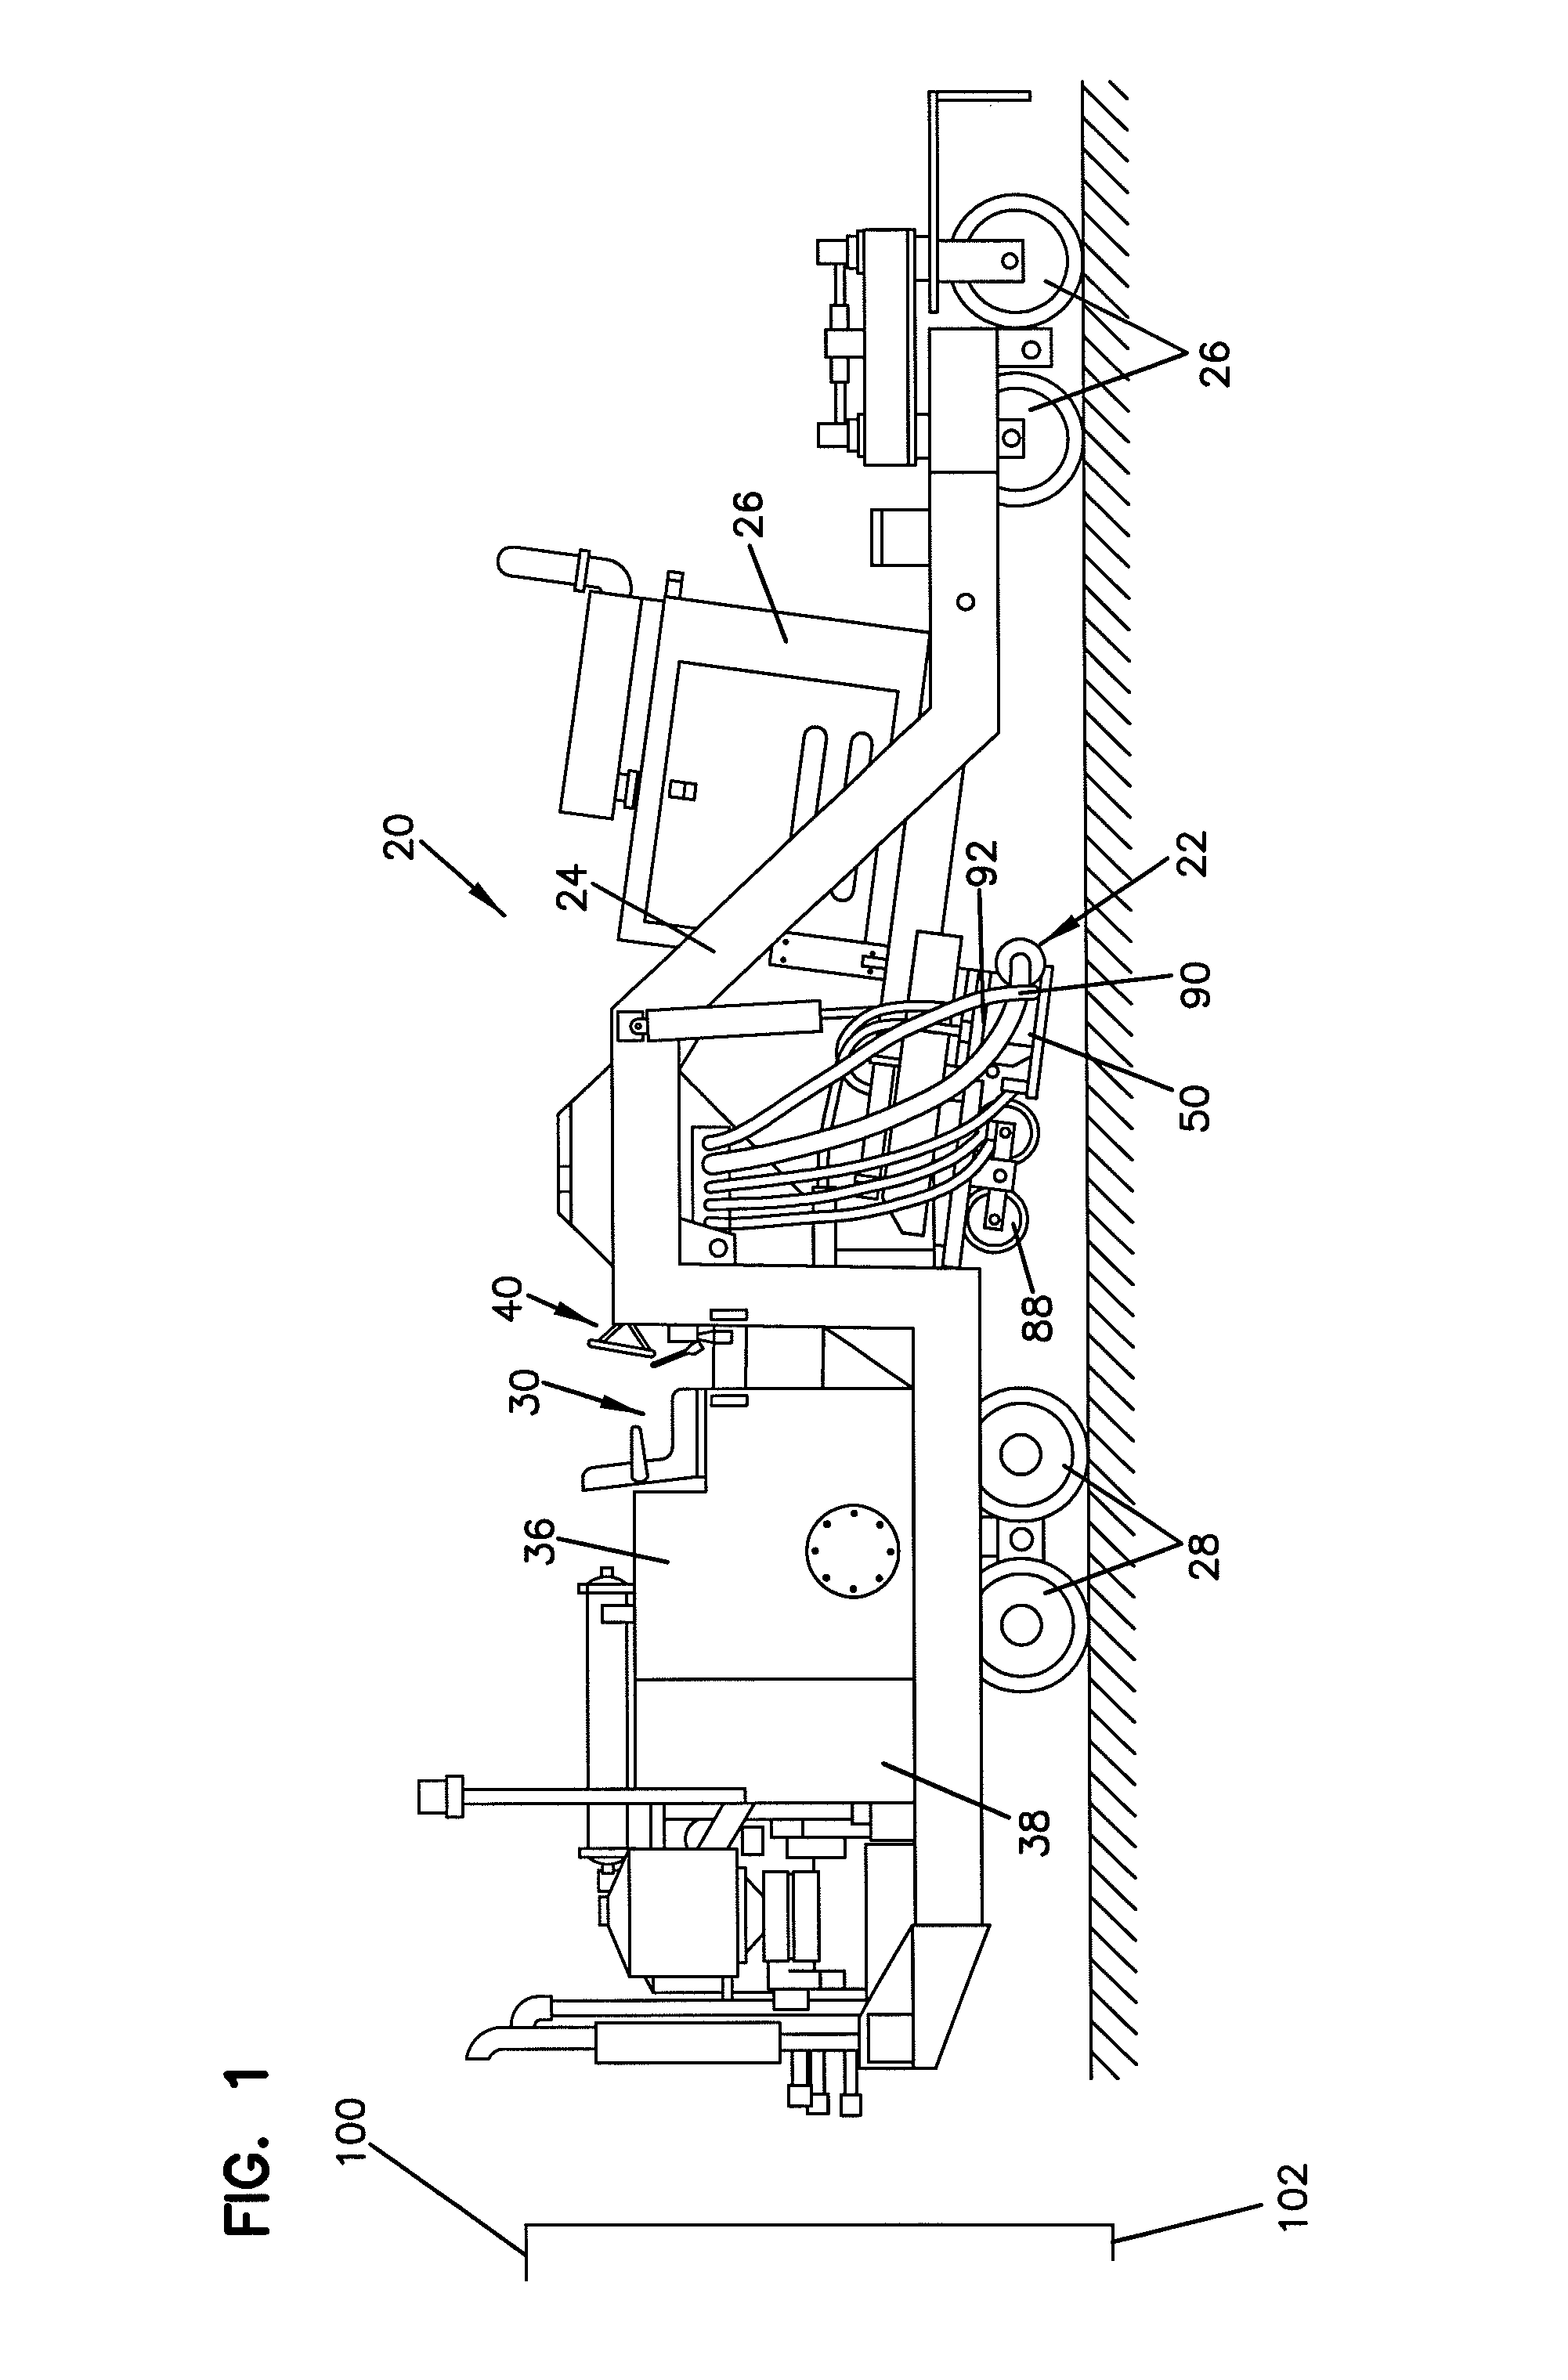 Water cooling system for grinder blades